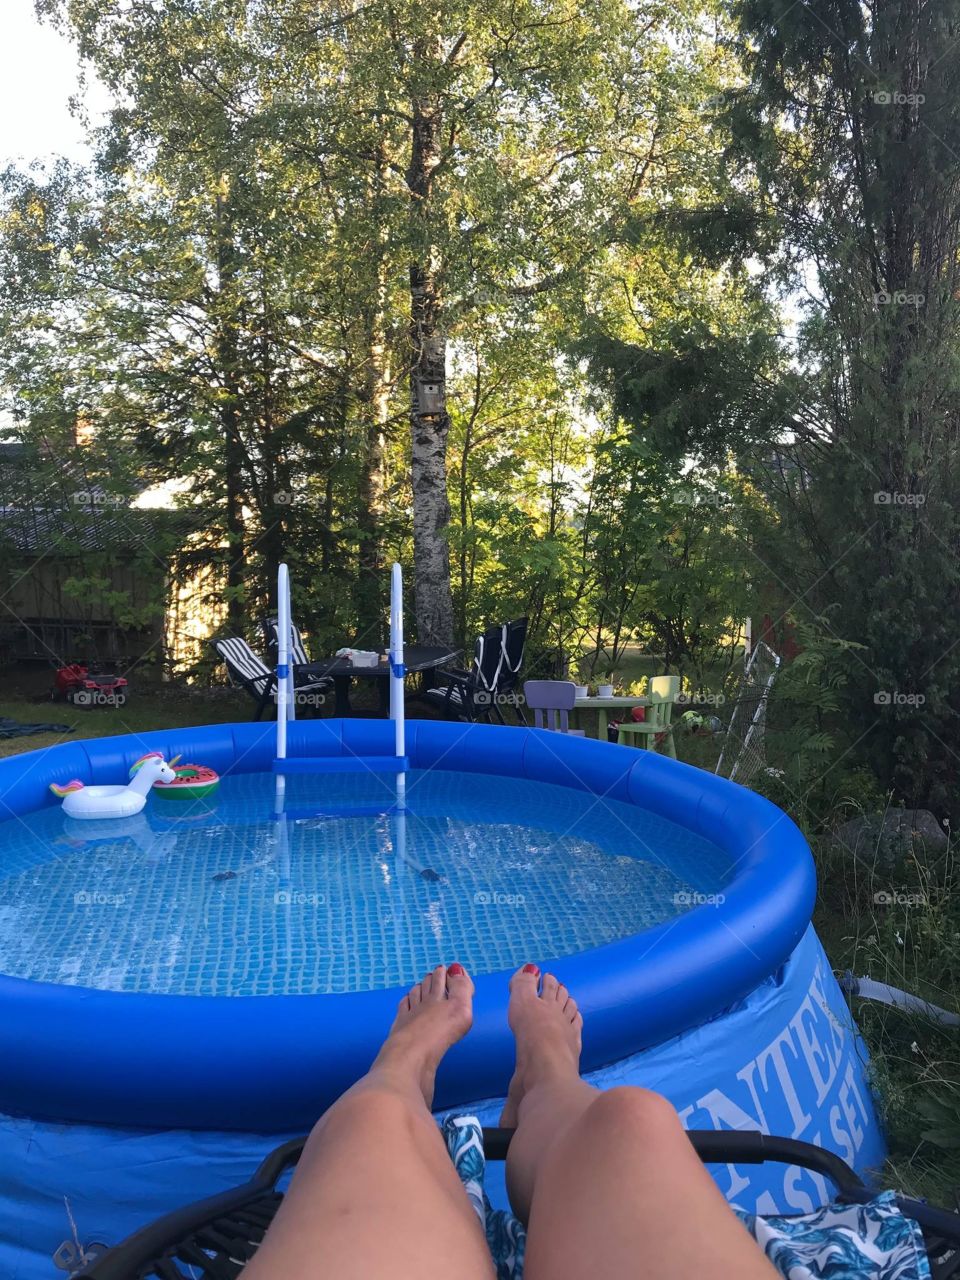 Intex pool in the backyard 